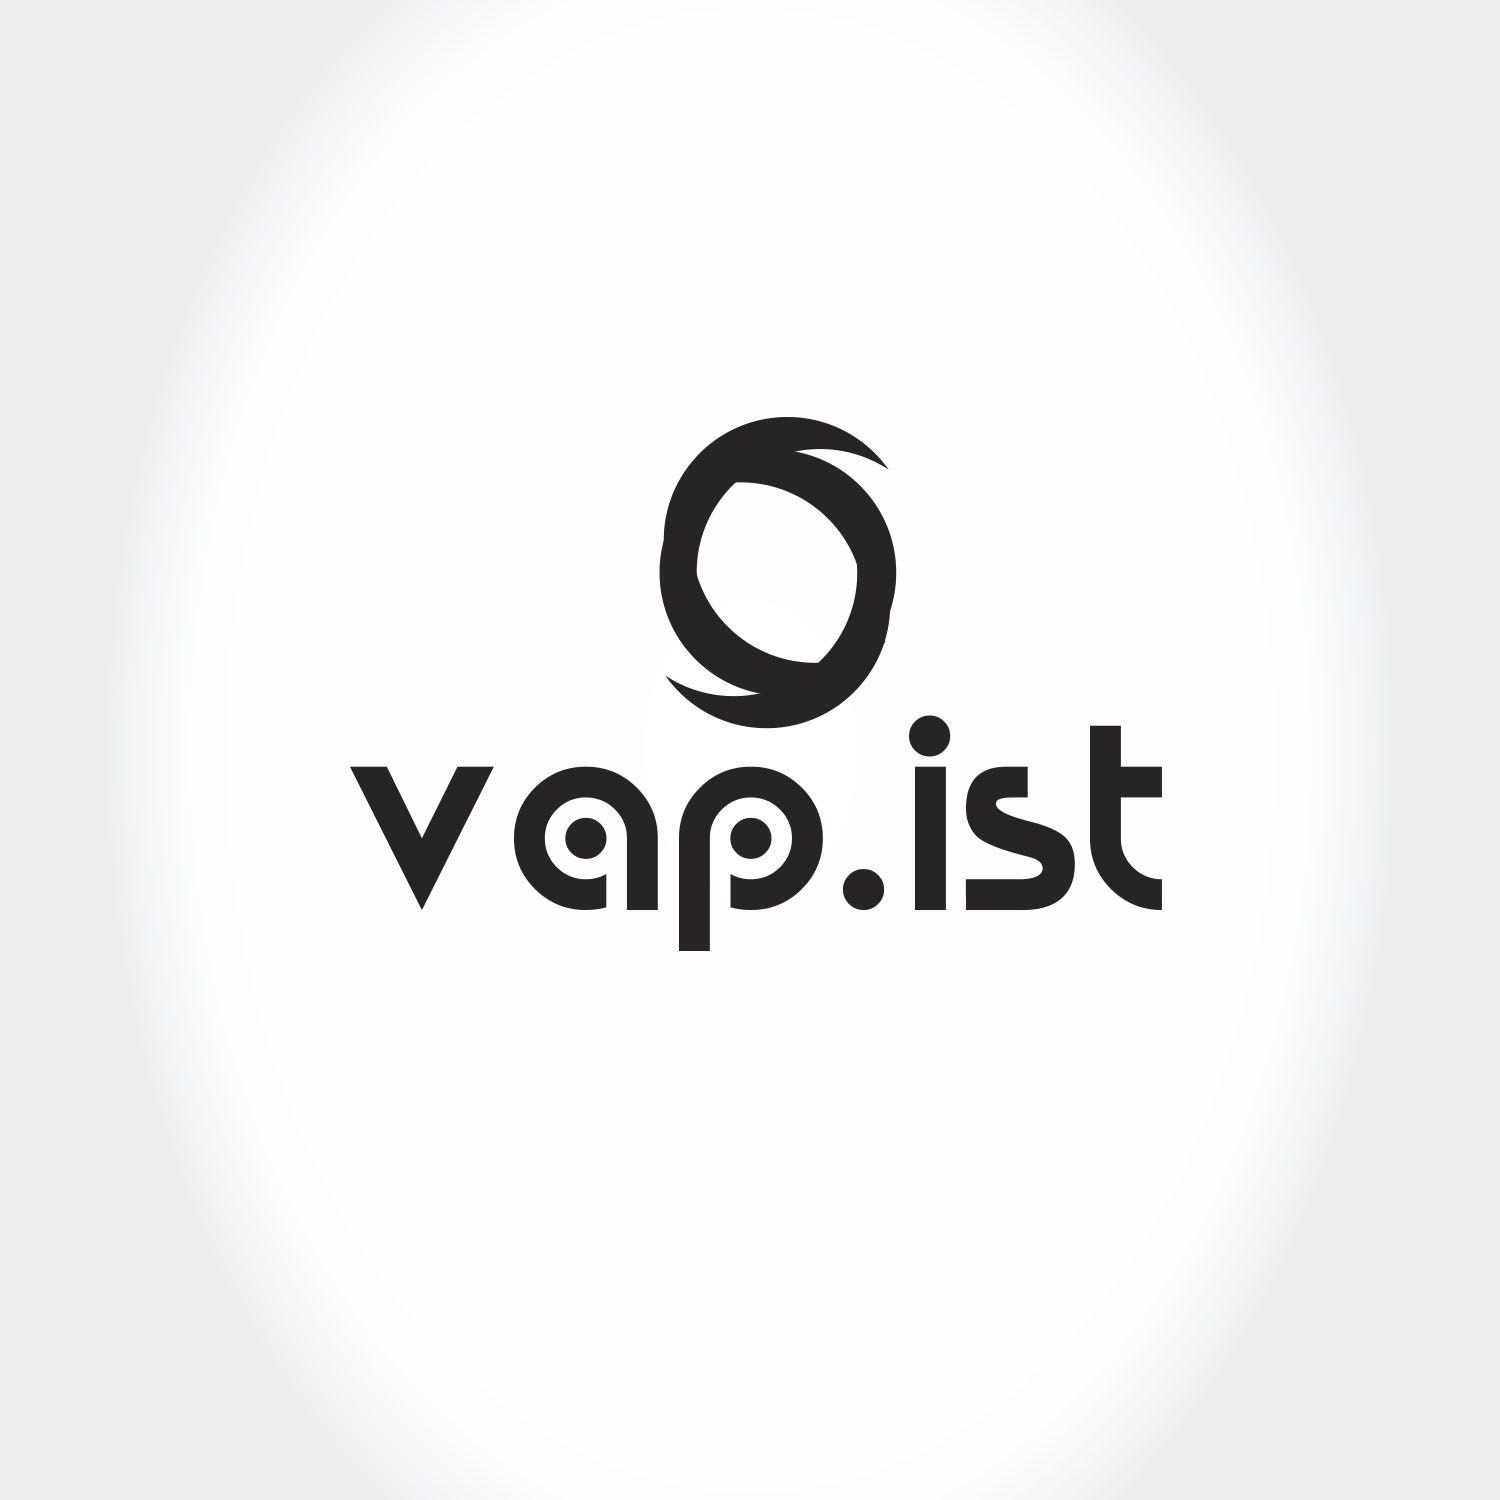 VAP Logo - Modern, Upmarket, Hardware Logo Design for Vap.ist by Rheyn | Design ...